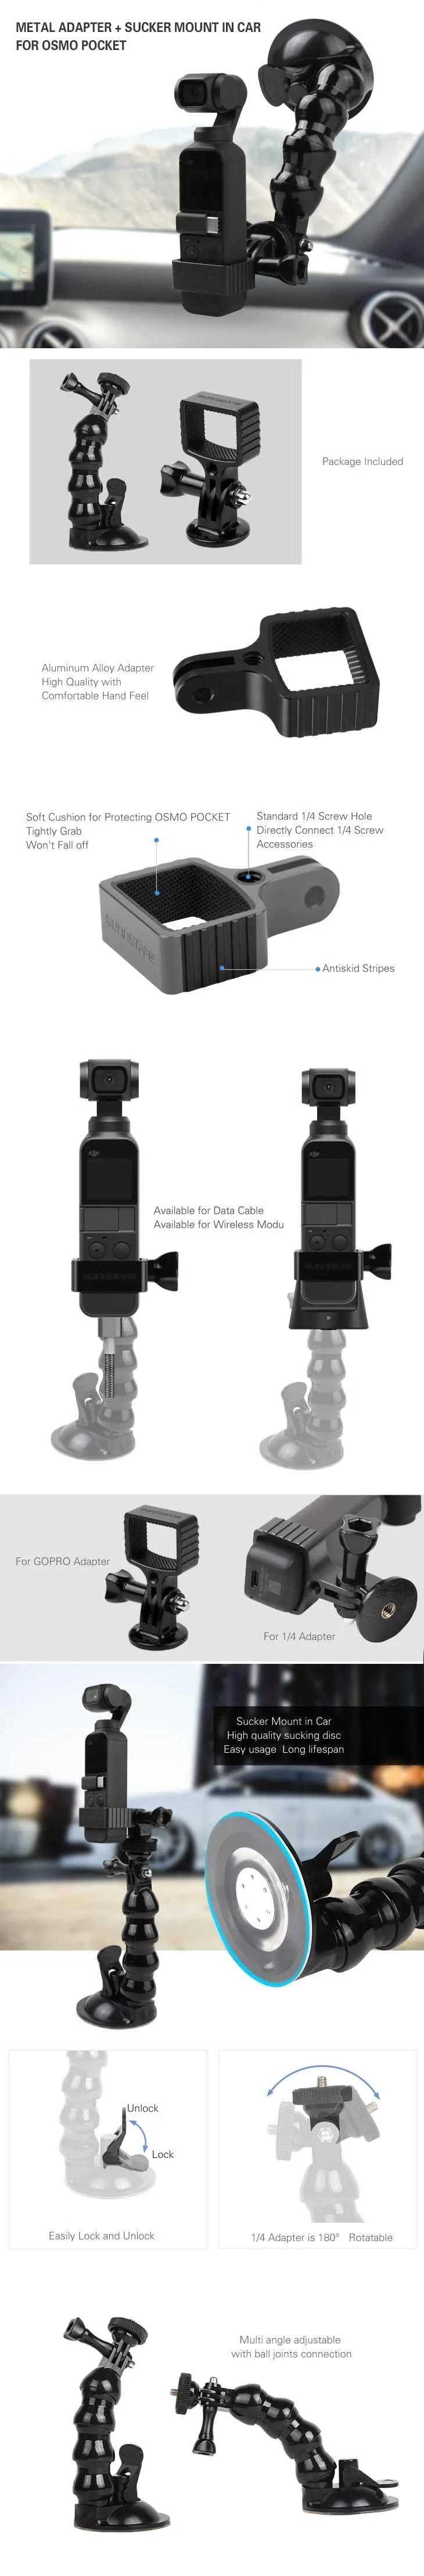 Sunnylife OSMO Карманный карданный расширительный кронштейн с Автомобильный держатель на присоске Adatper аксессуары для DJI